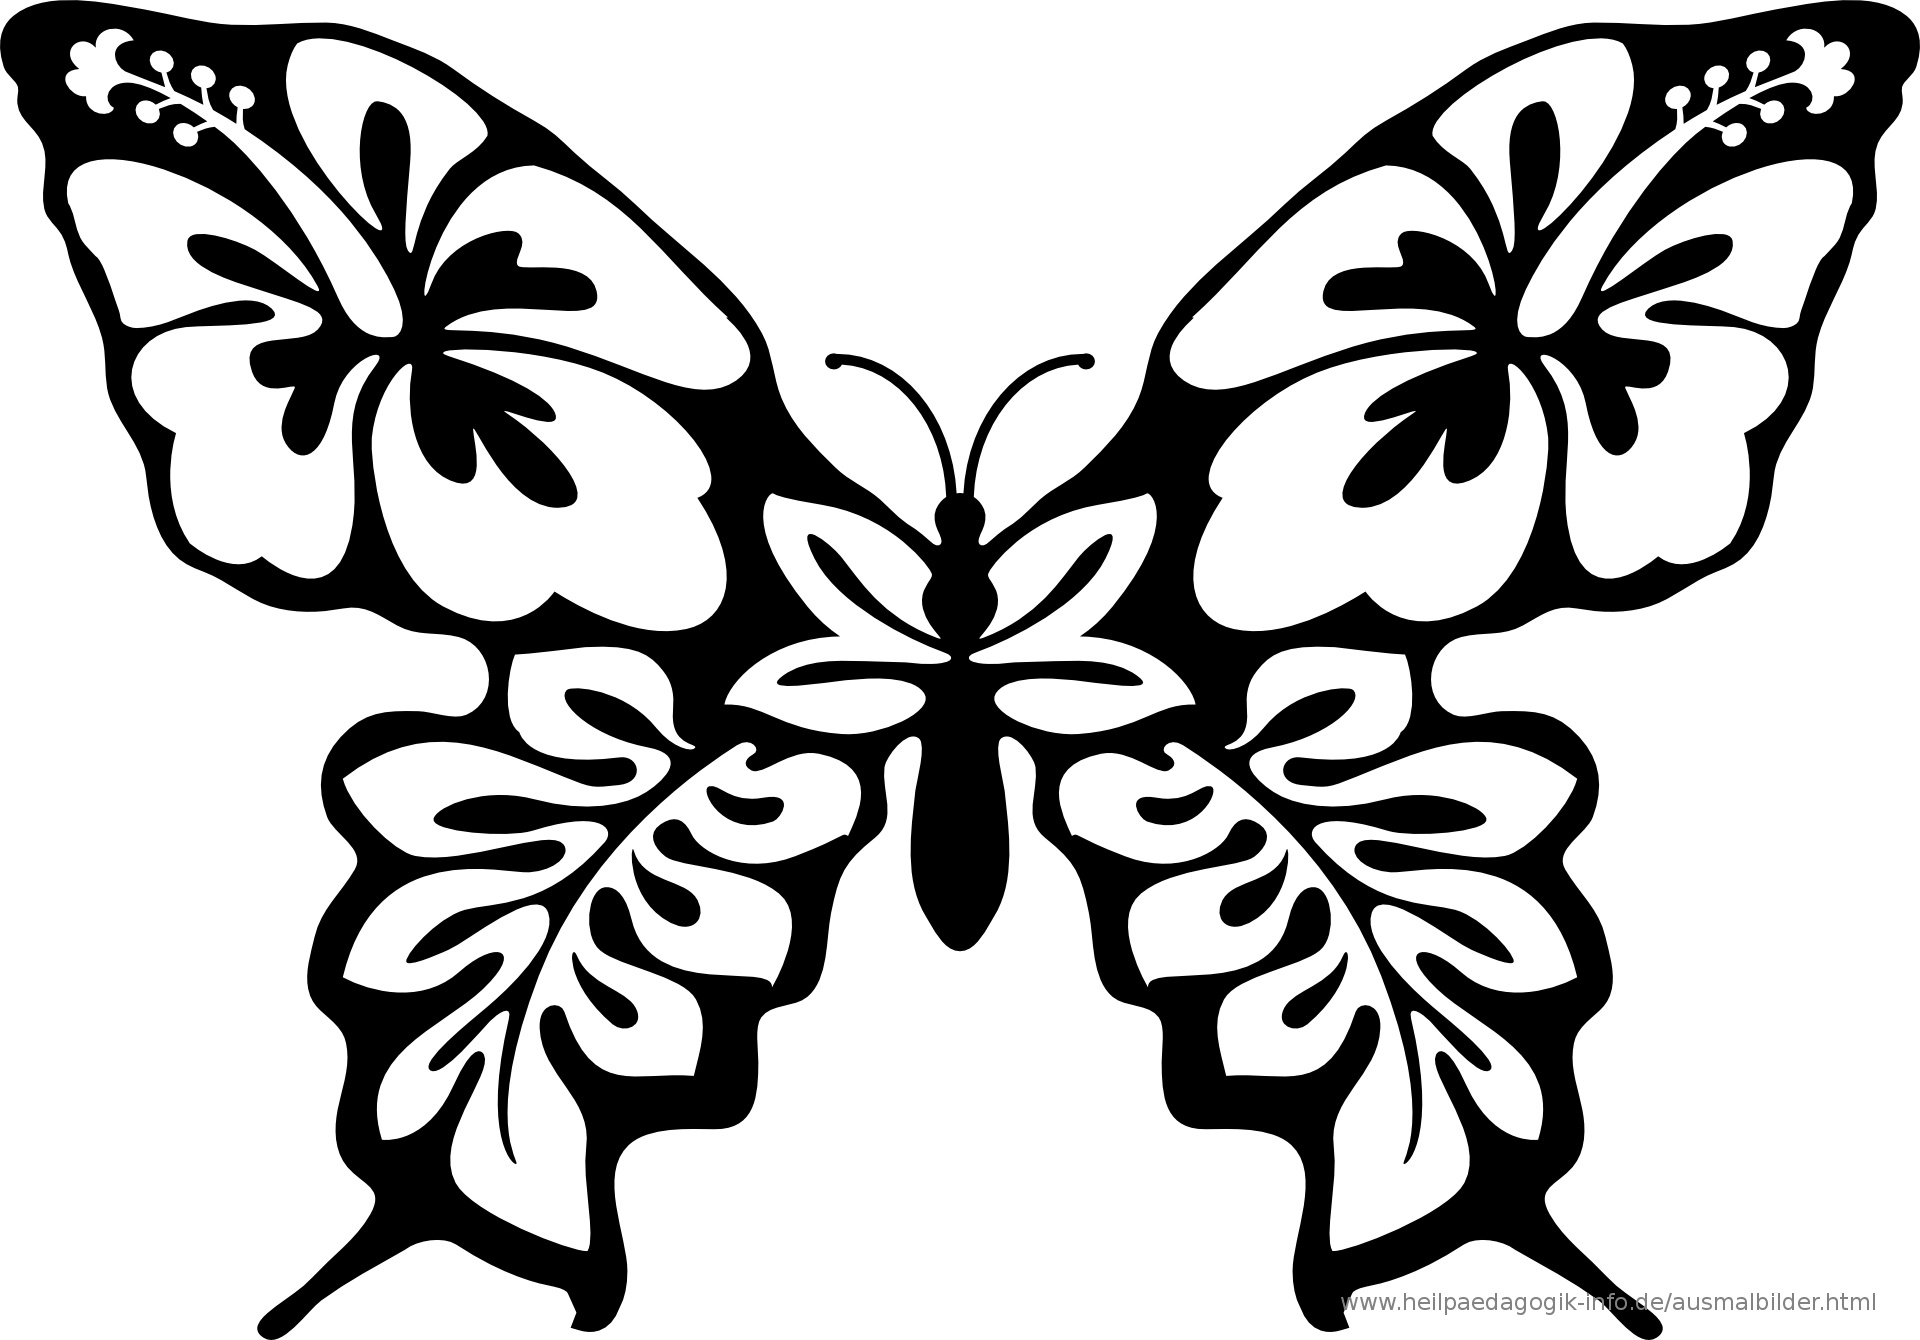 Ausmalbilder Käfer, Schmetterlinge, Insekten für Schmetterling Malvorlagen